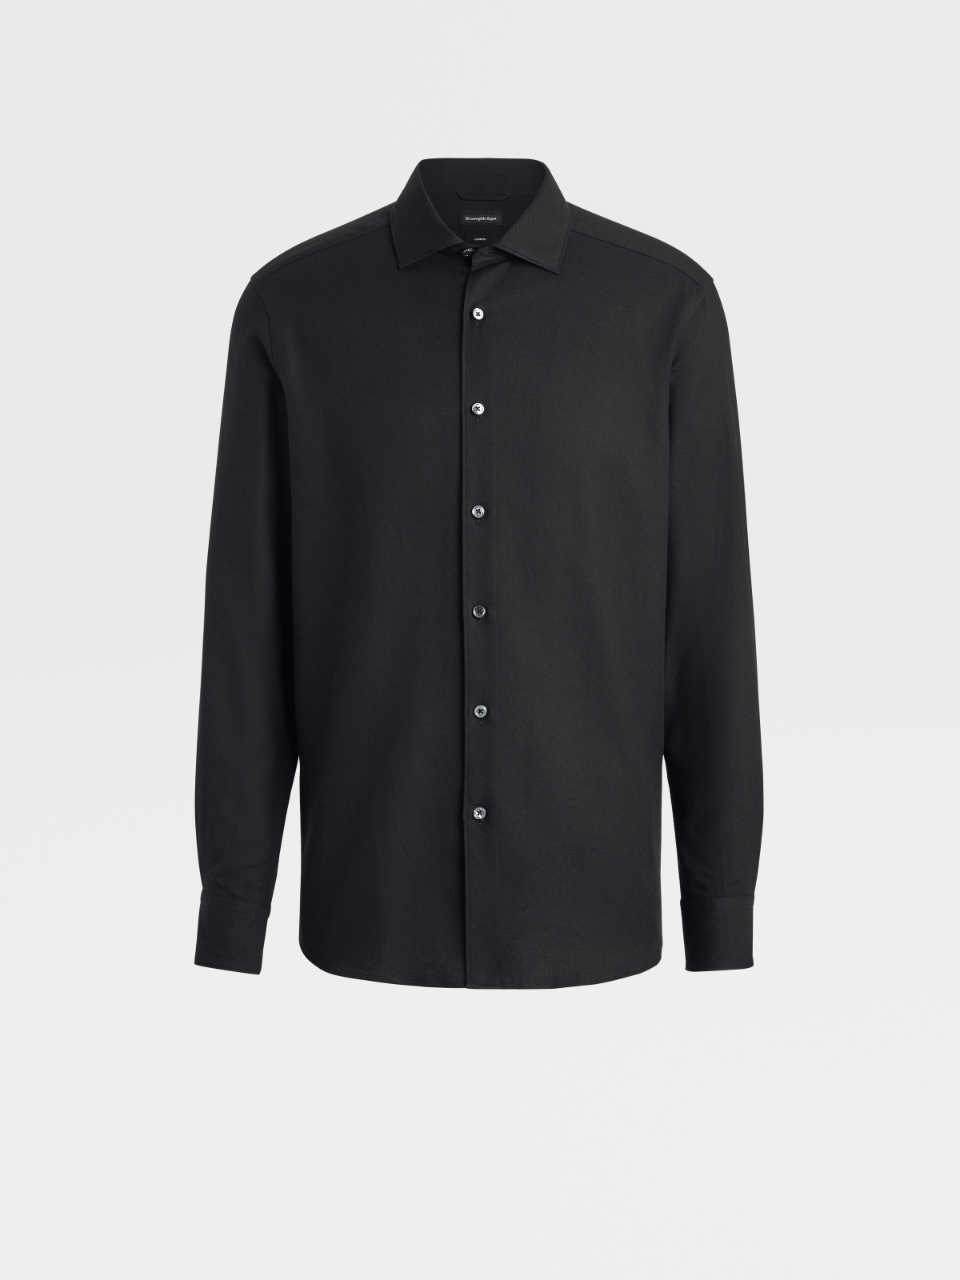 Black Cashco Cotton and Cashmere Shirt